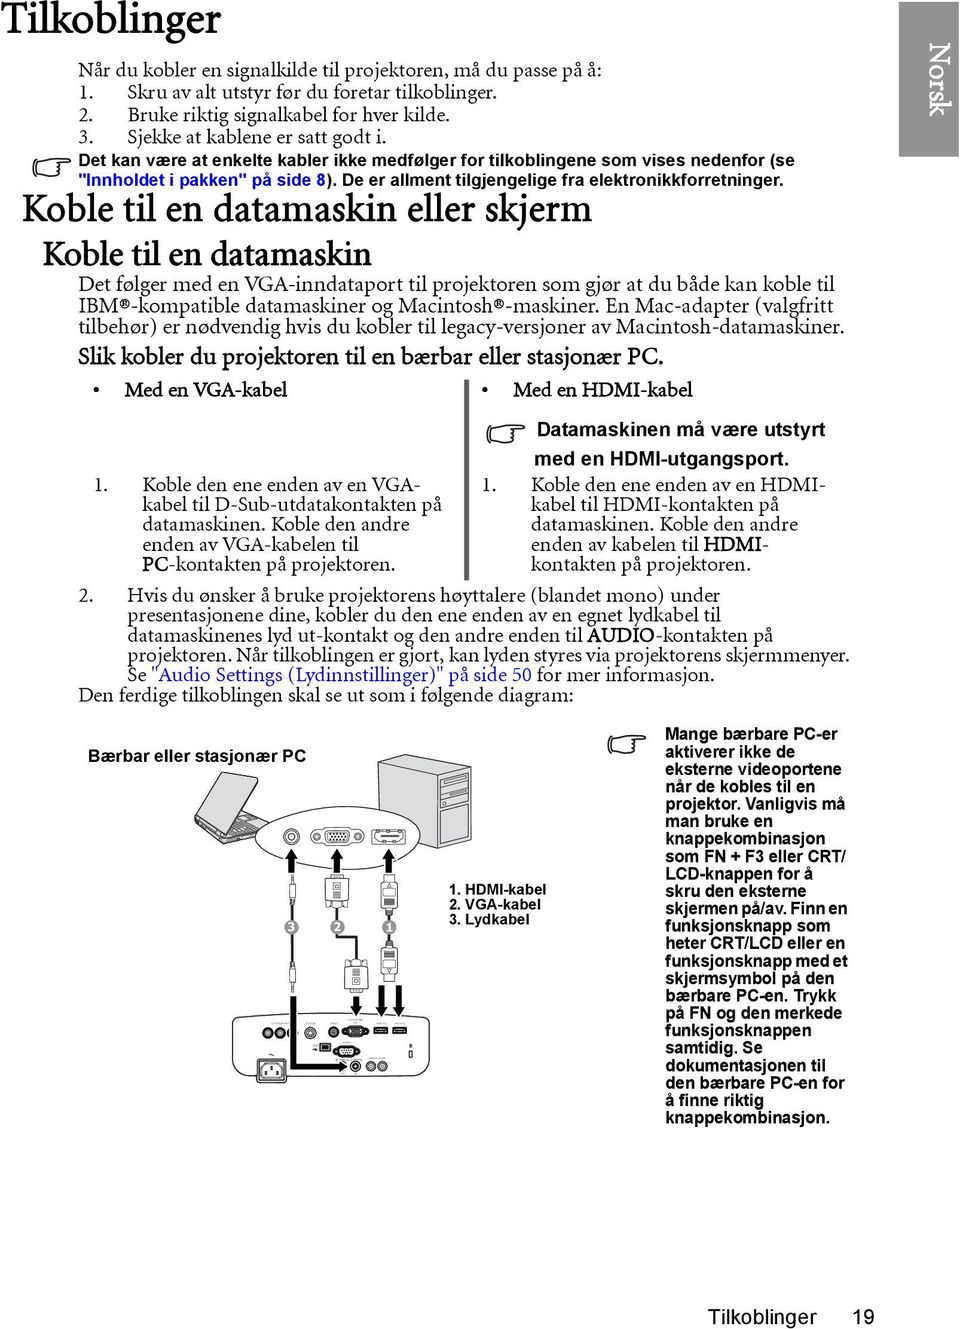 Det kan være at enkelte kabler ikke medfølger for tilkoblingene som vises nedenfor (se "Innholdet i pakken" på side 8). De er allment tilgjengelige fra elektronikkforretninger.